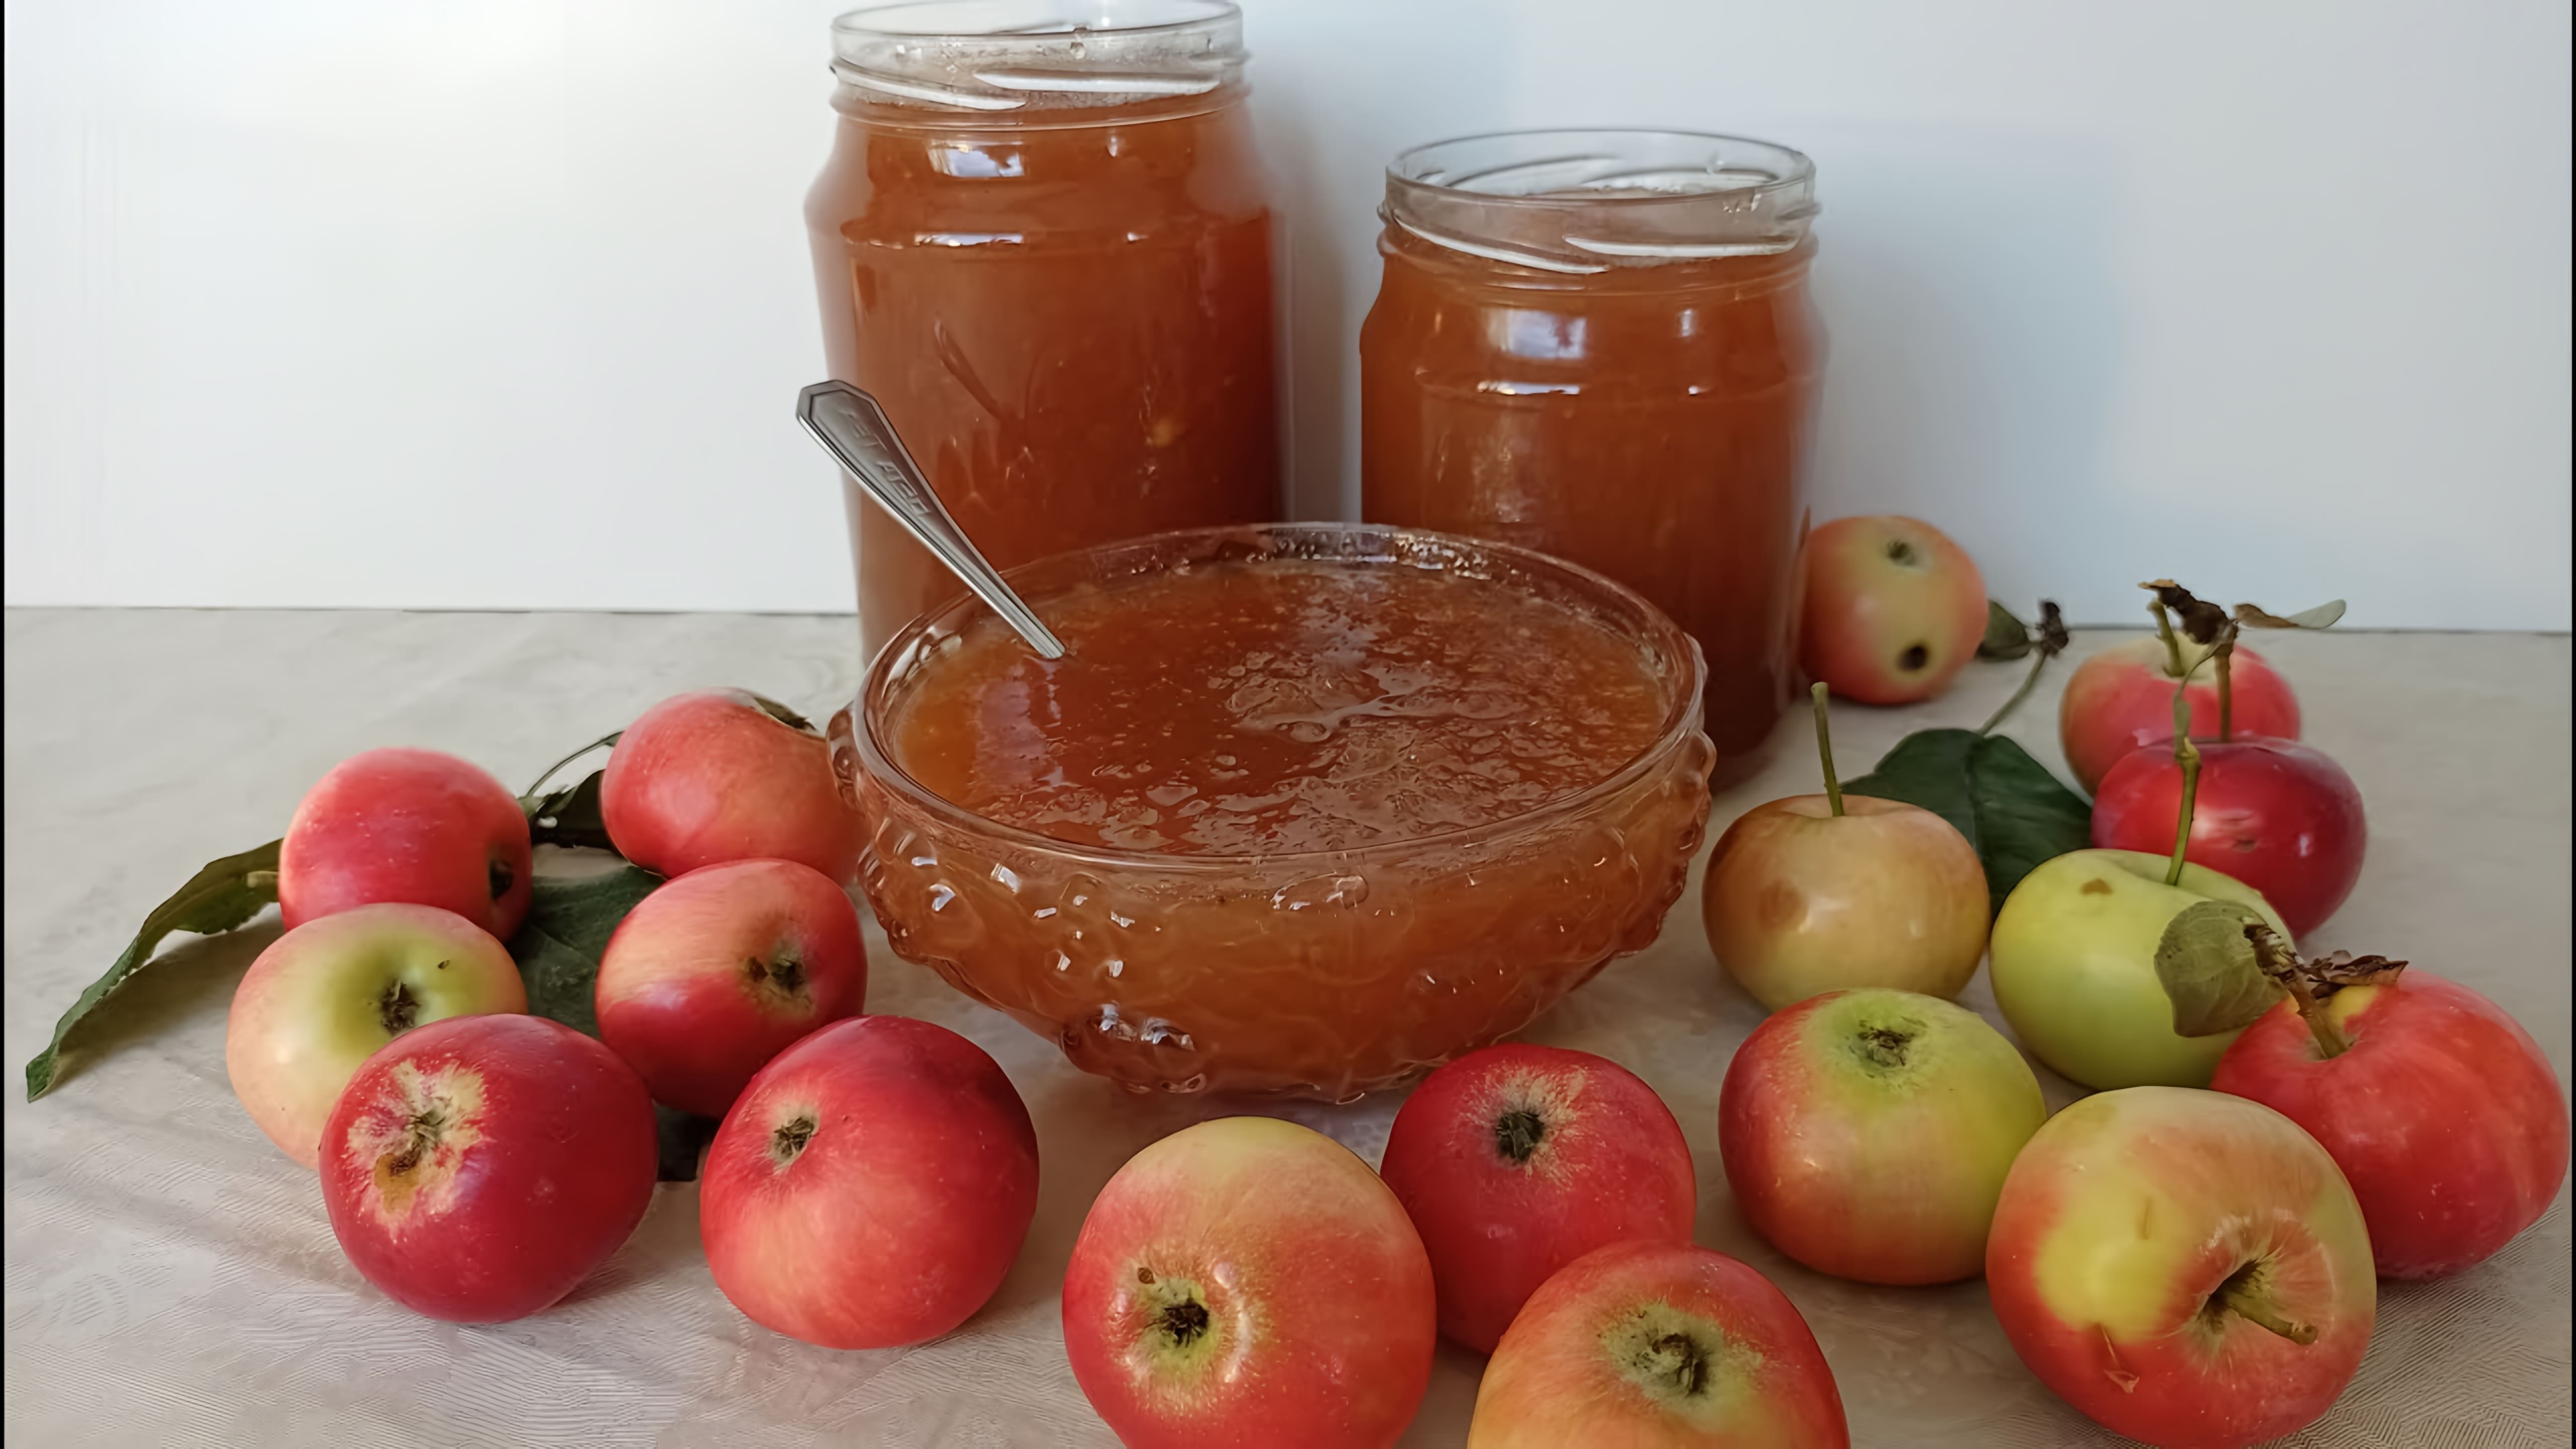 Яблочный Джем - это вкусное и полезное лакомство, которое можно приготовить в домашних условиях